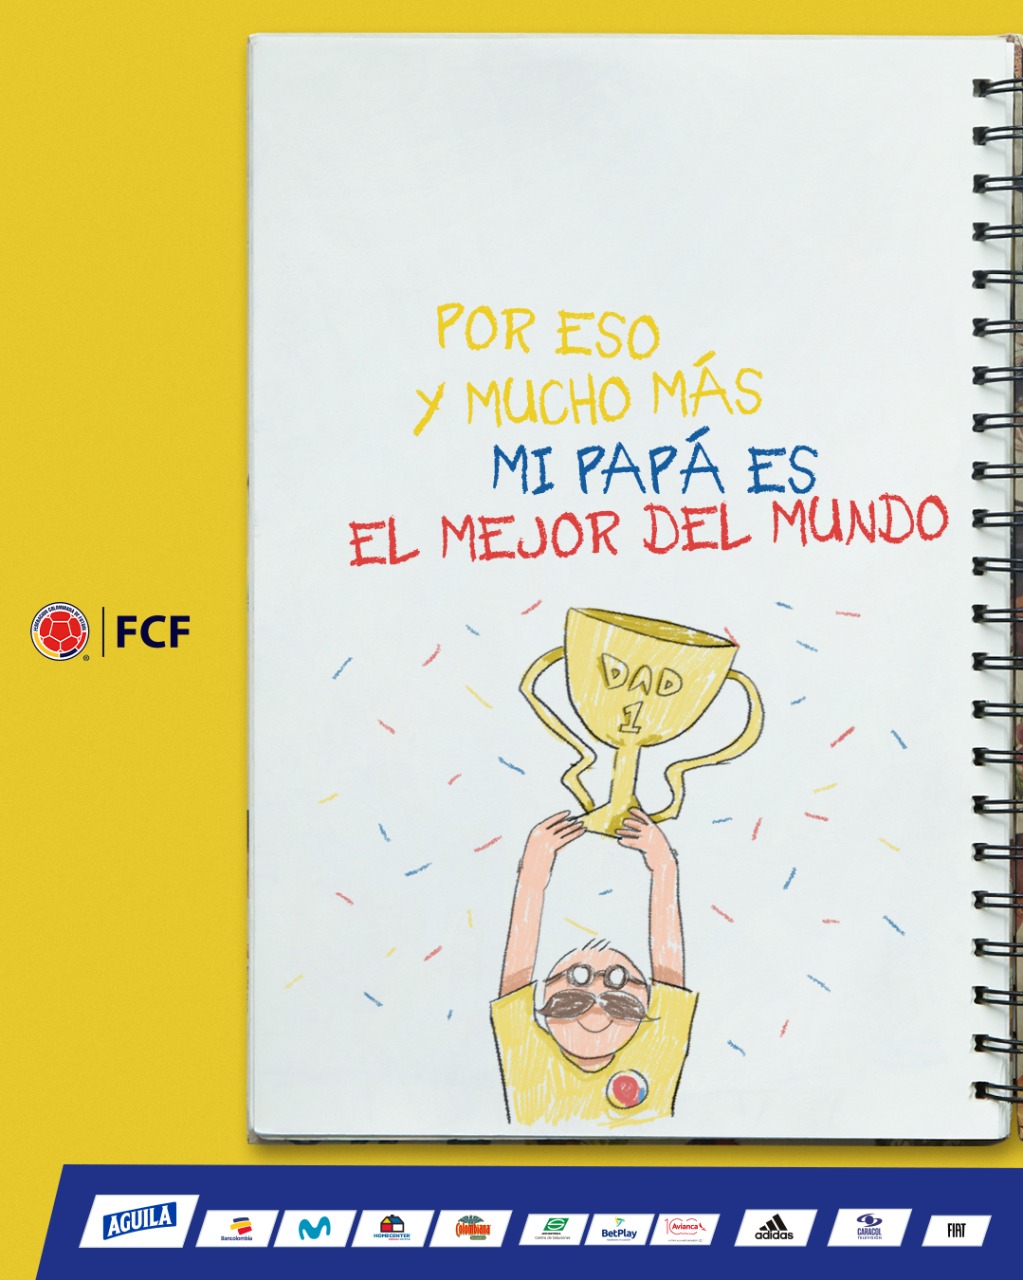 Feliz Día del Padre les desea la FCF! – Federación colombiana de fútbol